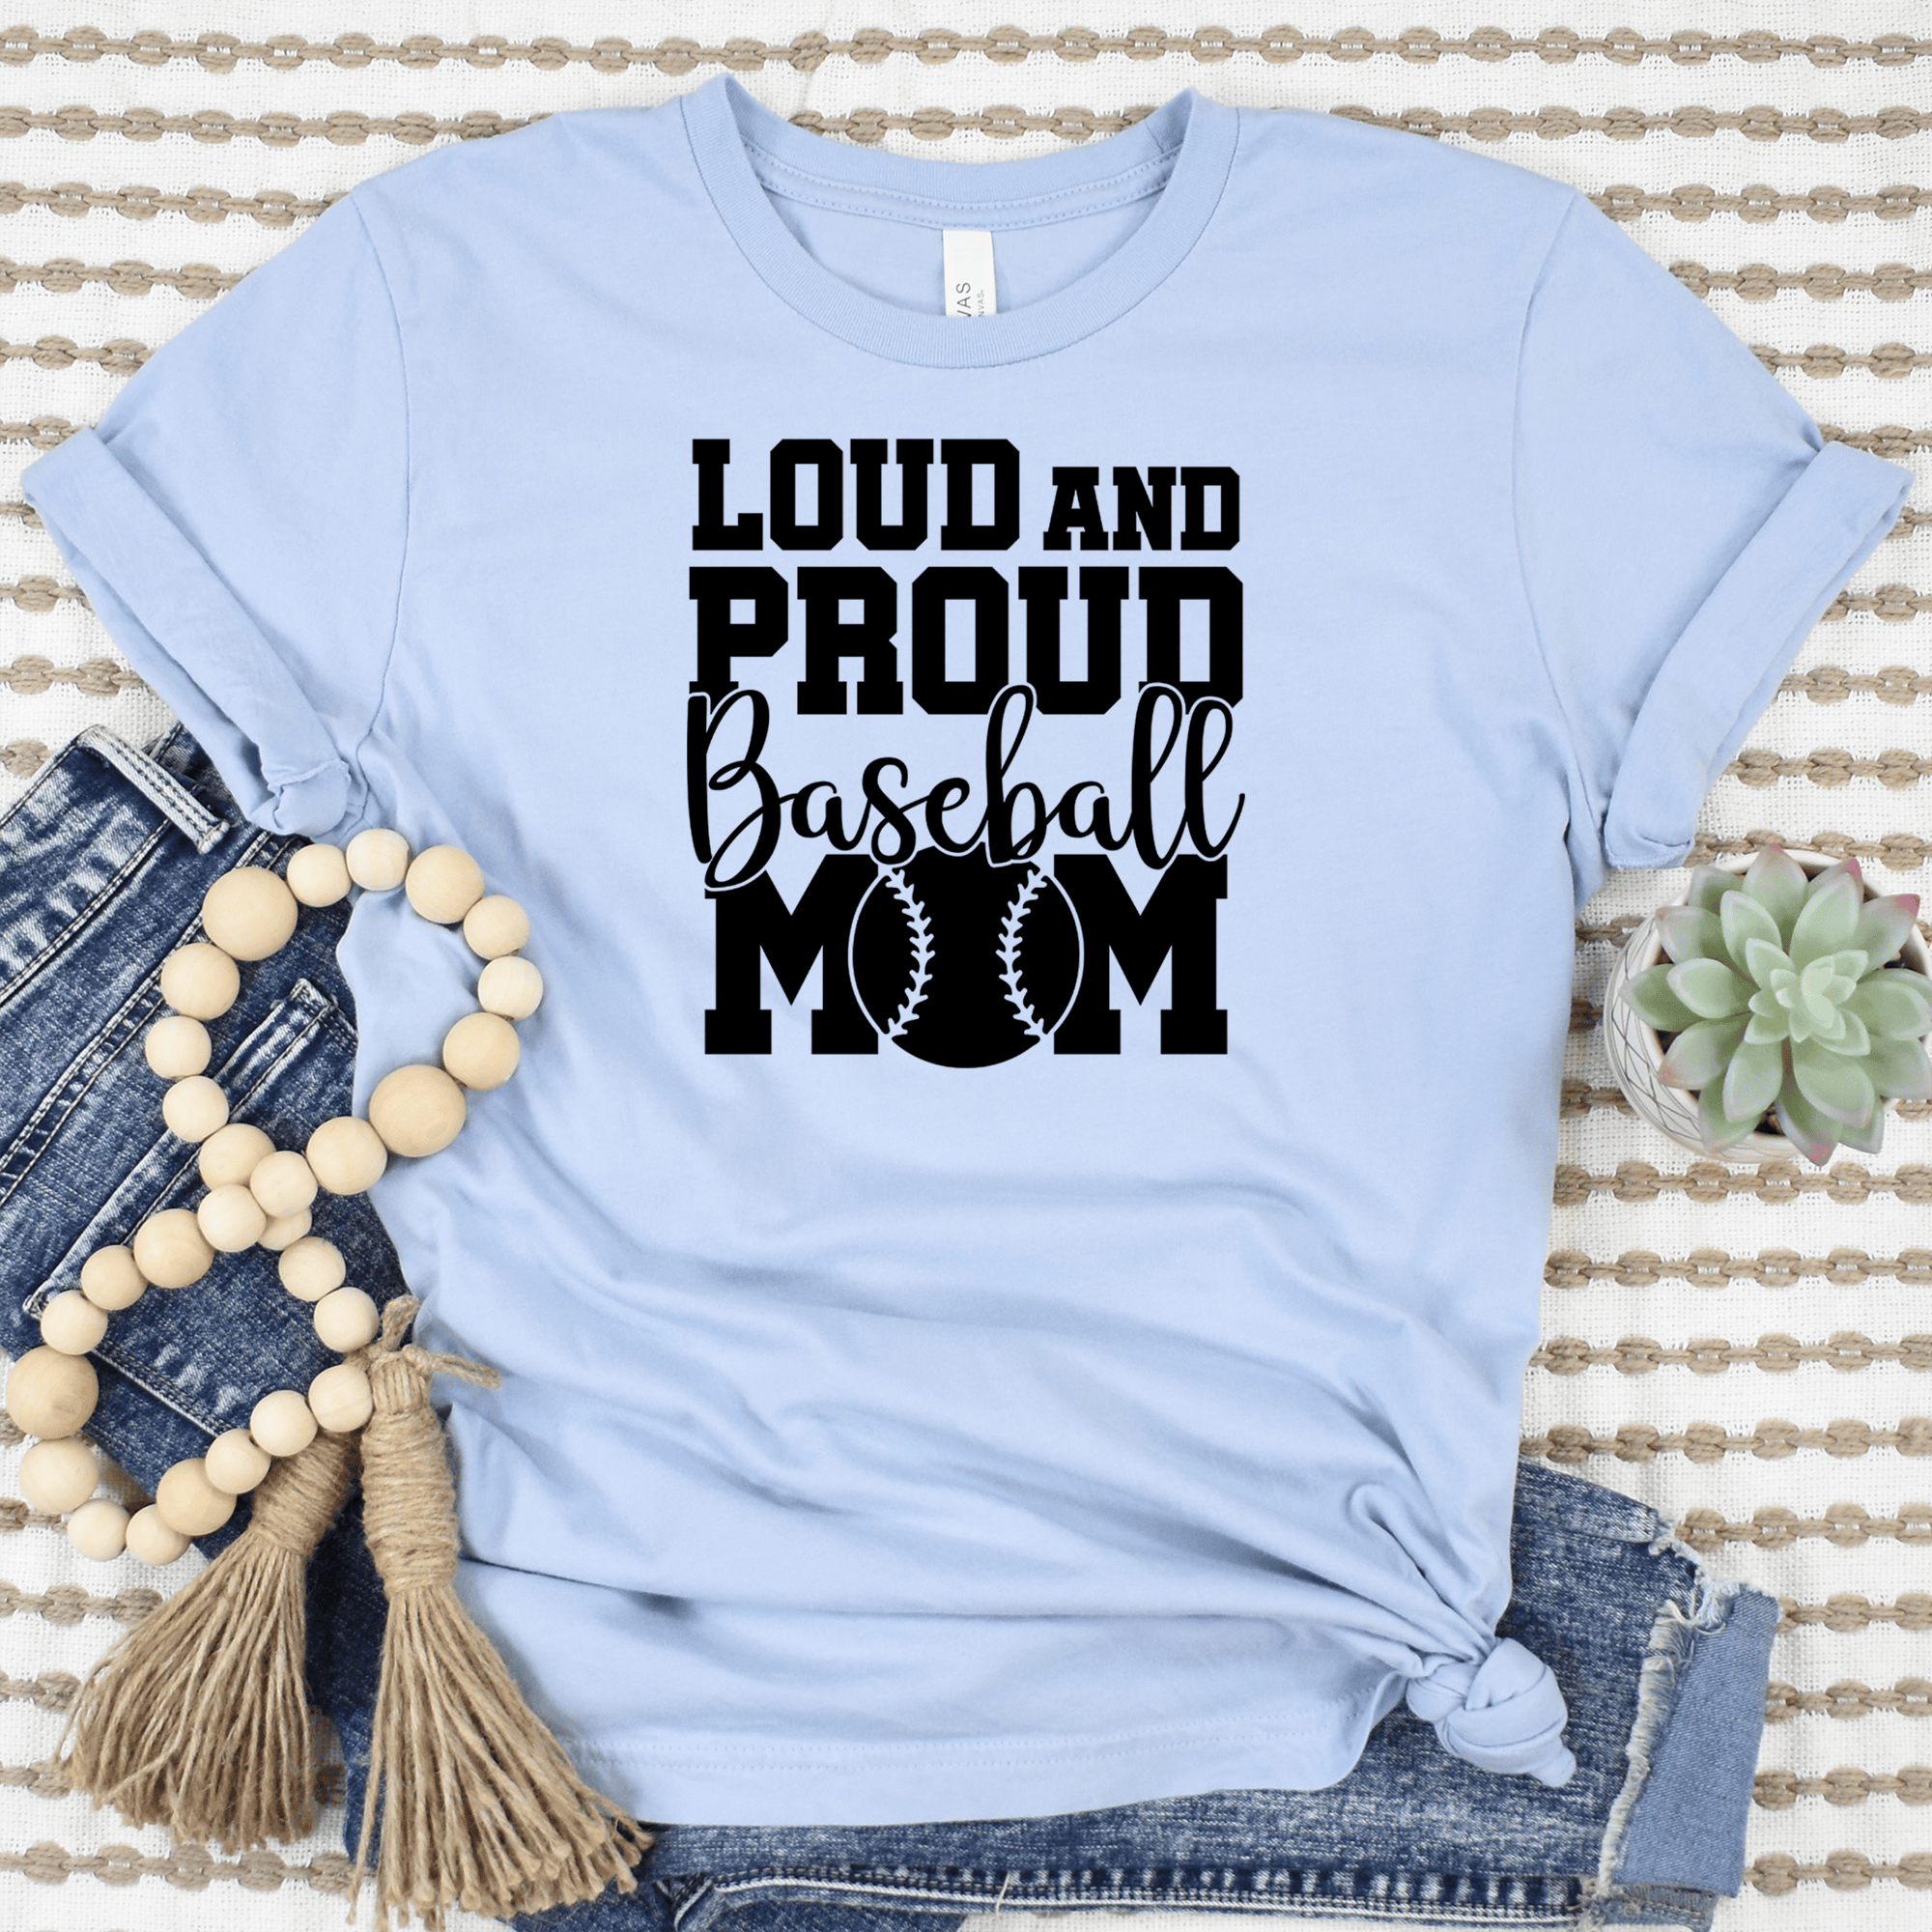 Womens Light Blue T Shirt with Loud-Baseball-Mom-Alert design